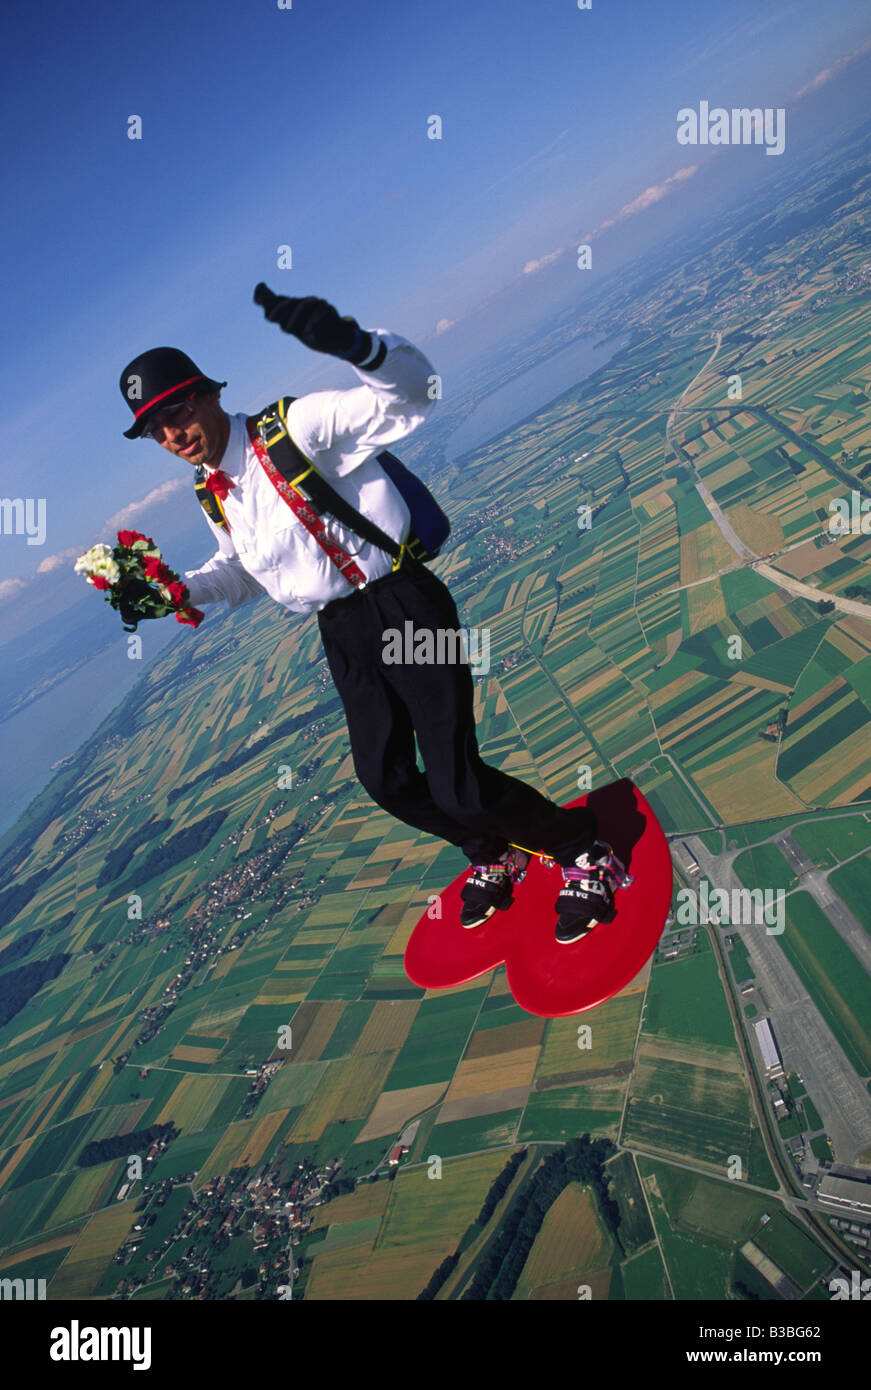 Ein Fallschirmspringer mit Anzug und Hut surft auf einem herzförmigen  Surfbrett In seiner linken Hand er s hält einen Blumenstrauß  Stockfotografie - Alamy